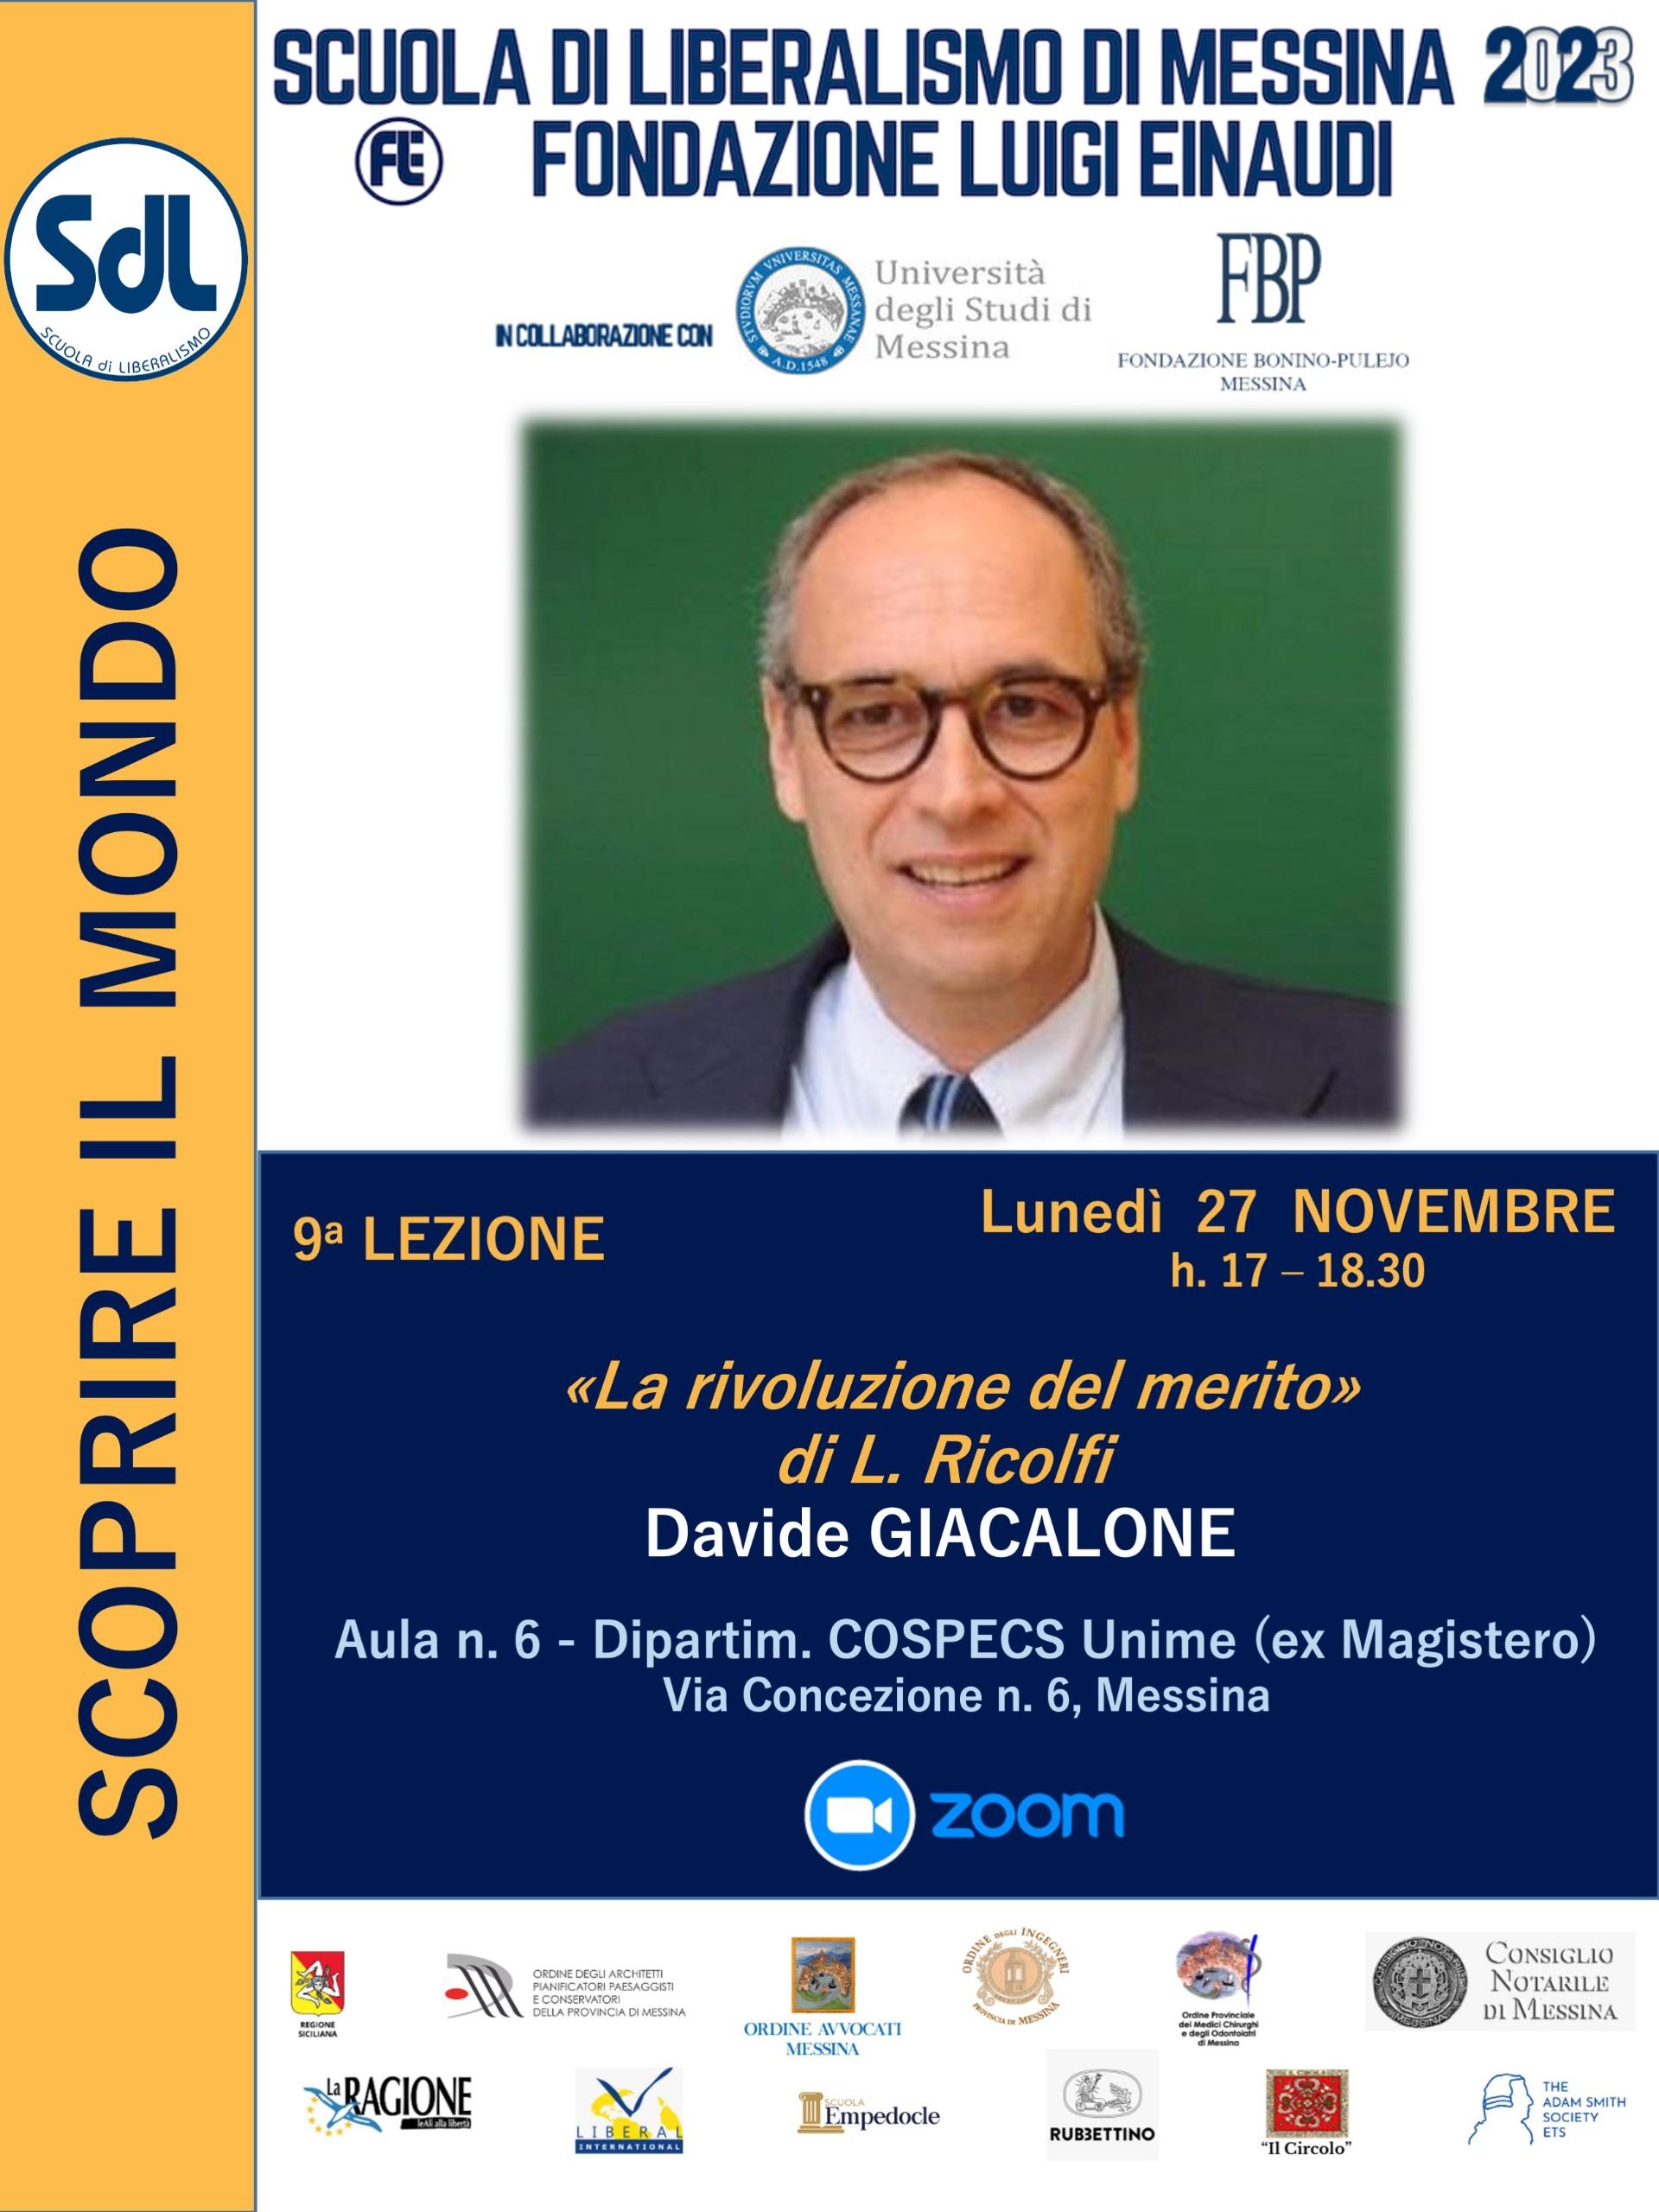 Scuola di Liberalismo 2023 – Messina: lezione del prof. Davide Giacalone sul tema “La rivoluzione del merito”